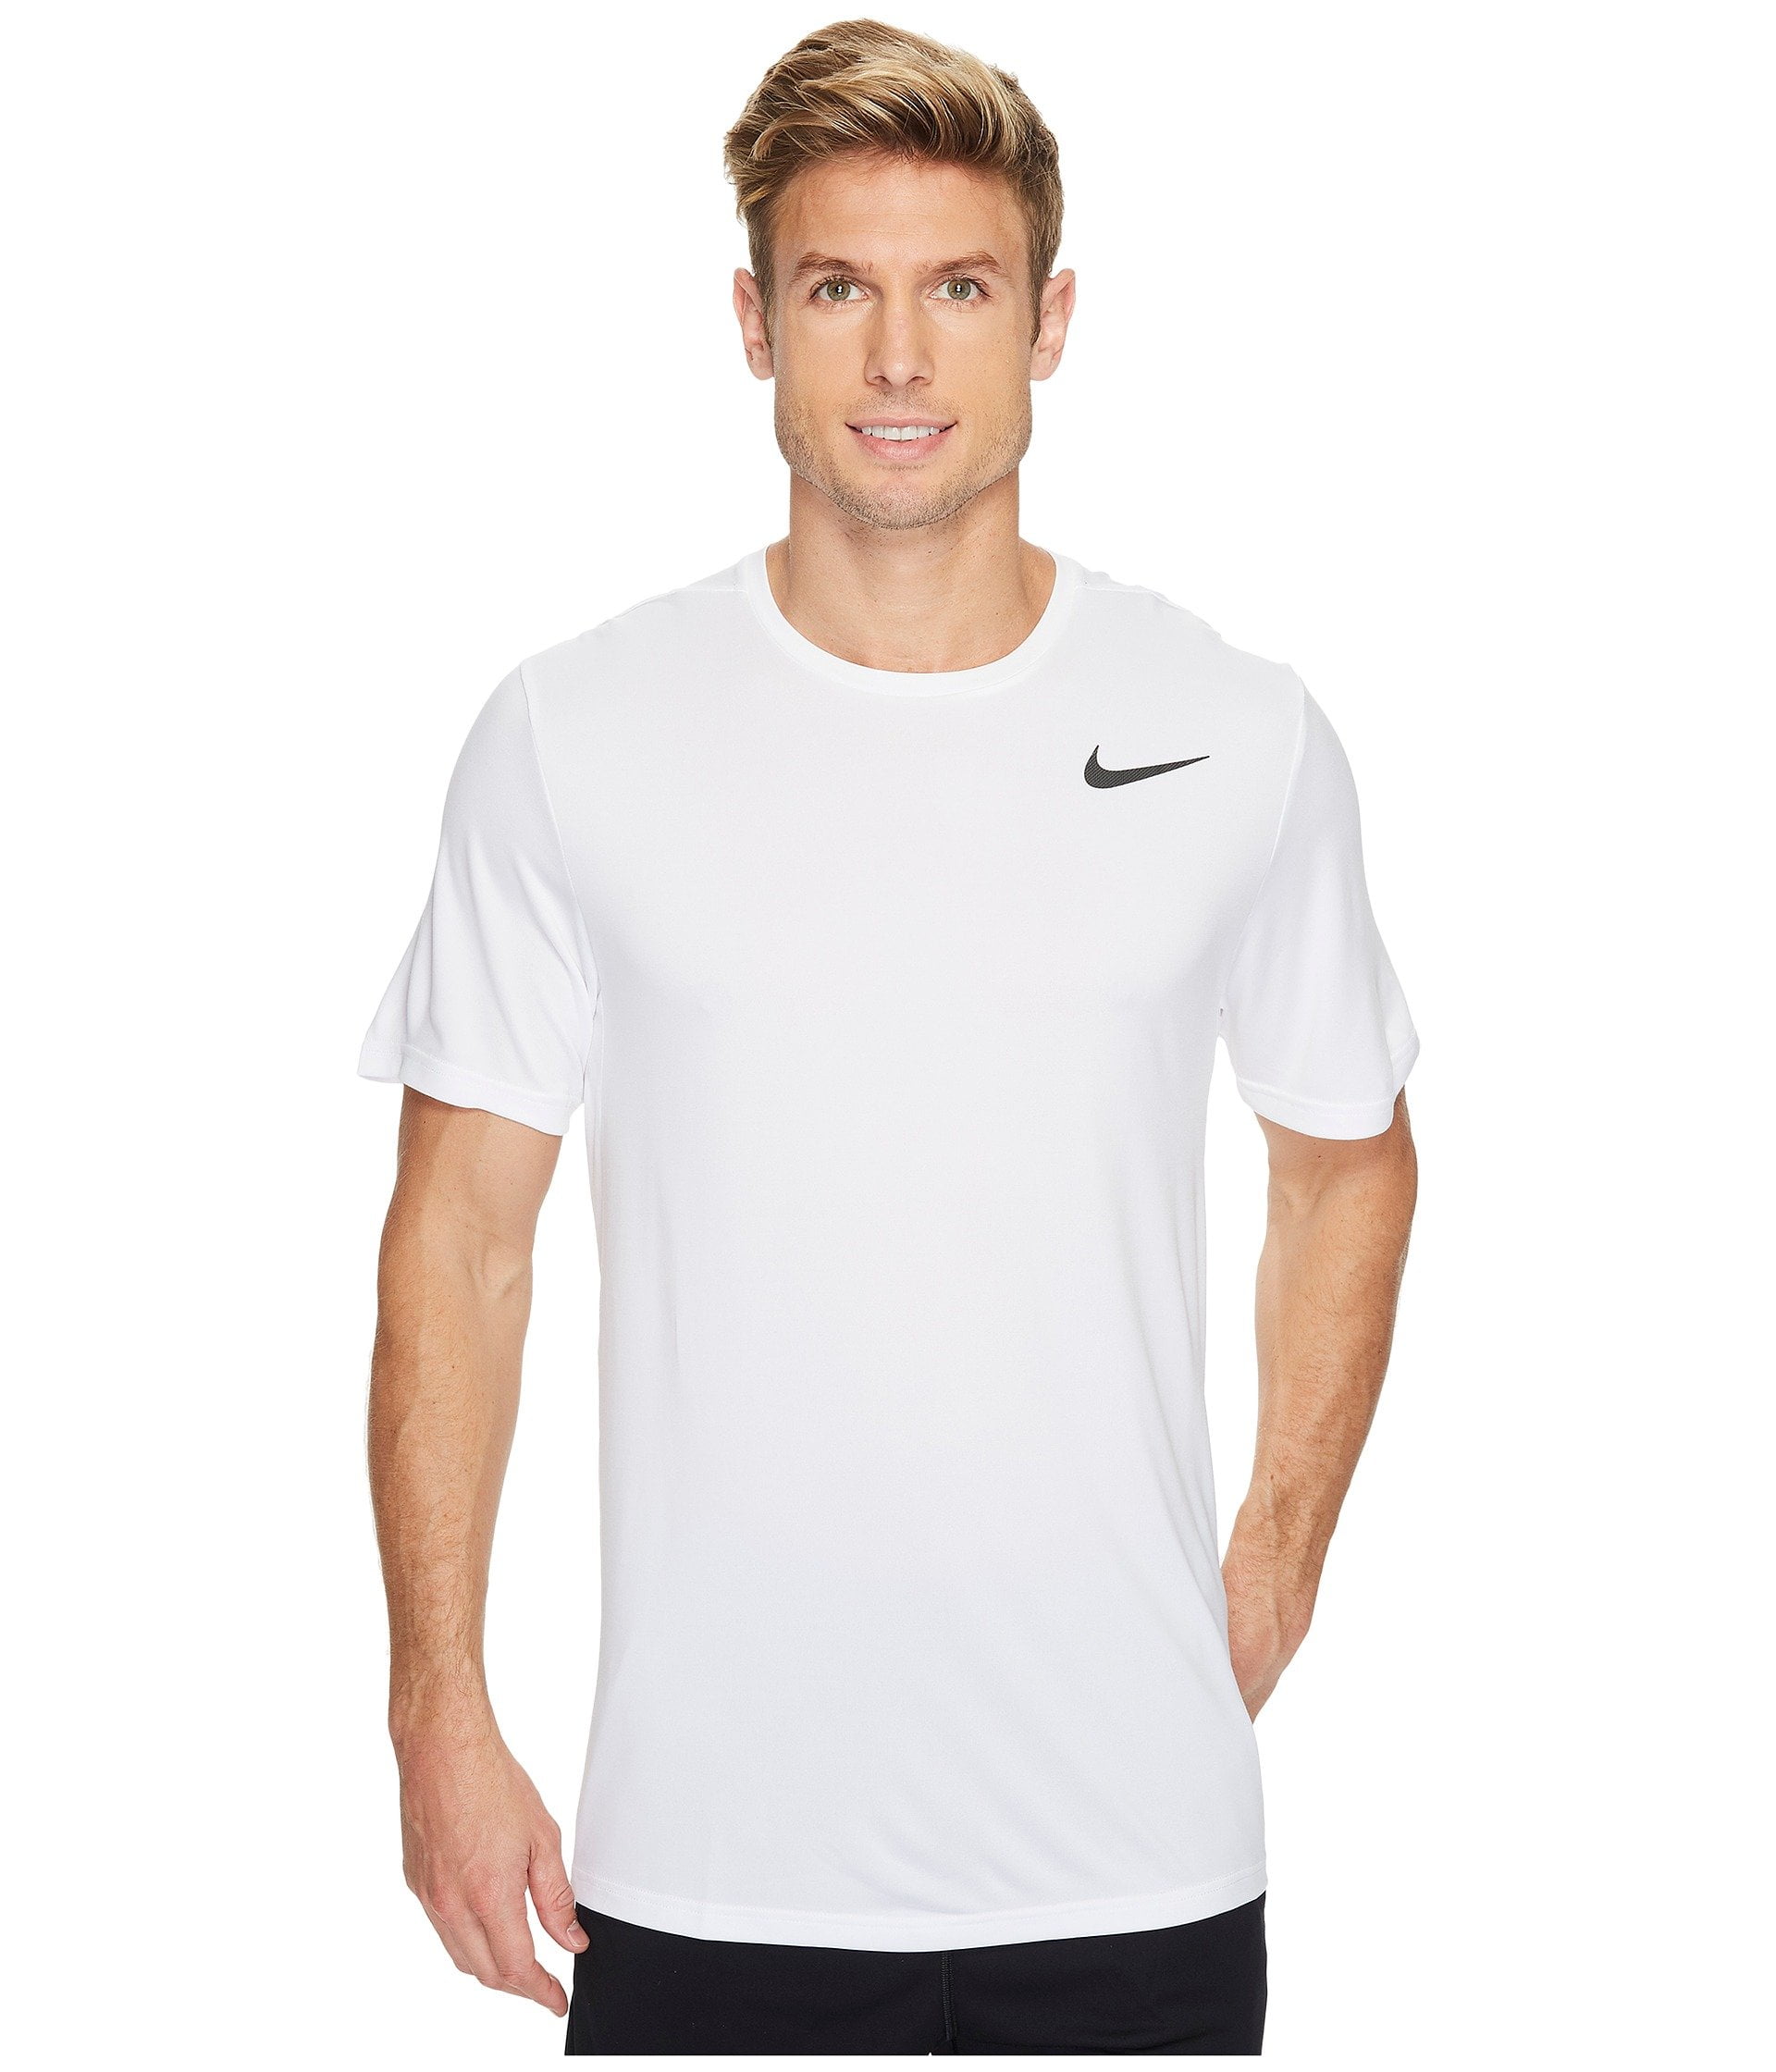 Nike Men's Dri-Fit Training T-Shirt X-Large White 